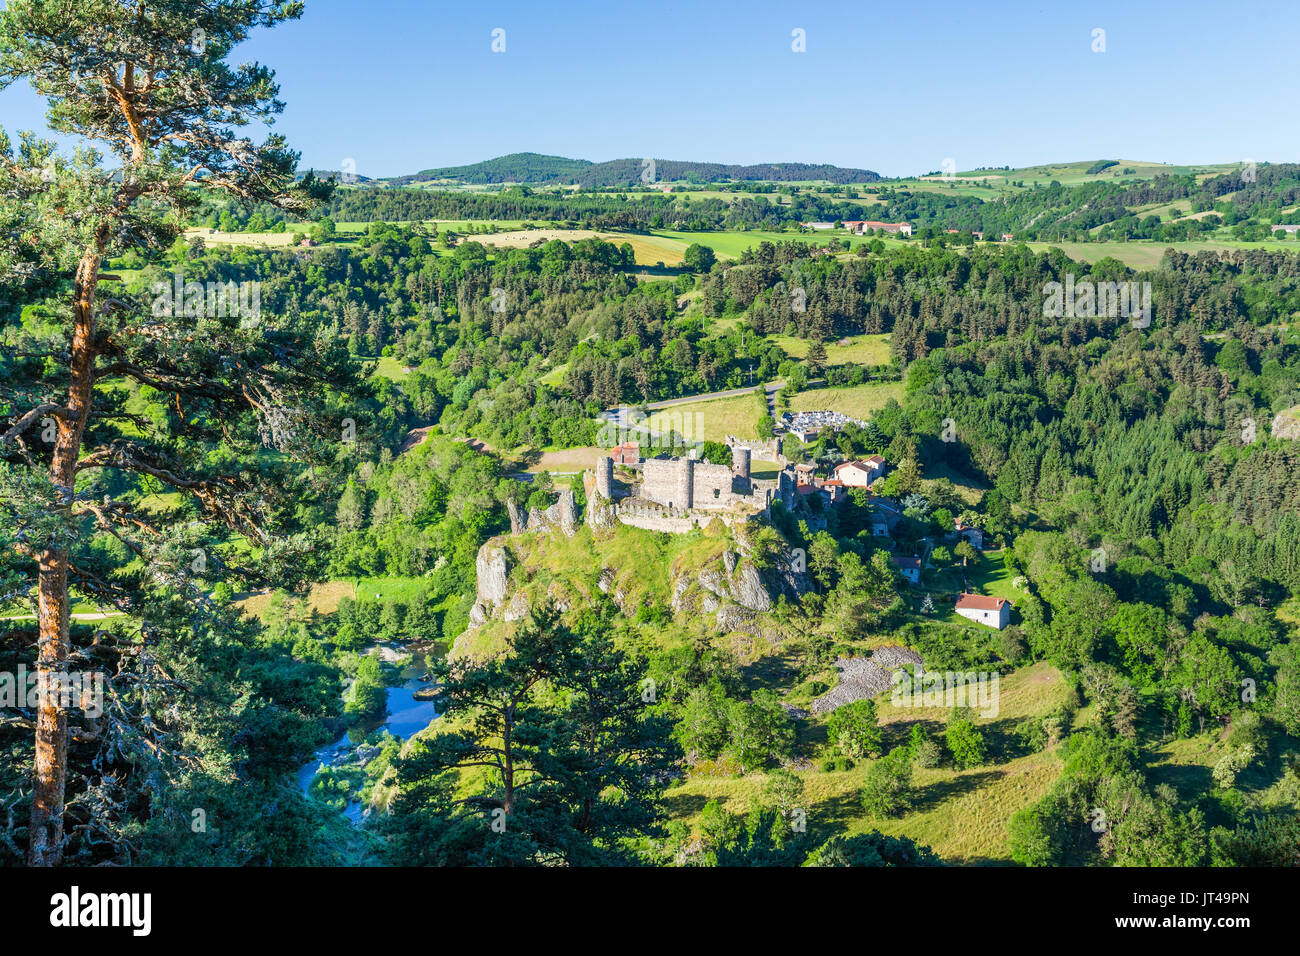 France, Haute-Loire, Loire valley, Arlempdes, labelled Les Plus Beaux Villages de France (The Most beautiful Villages of France) Stock Photo